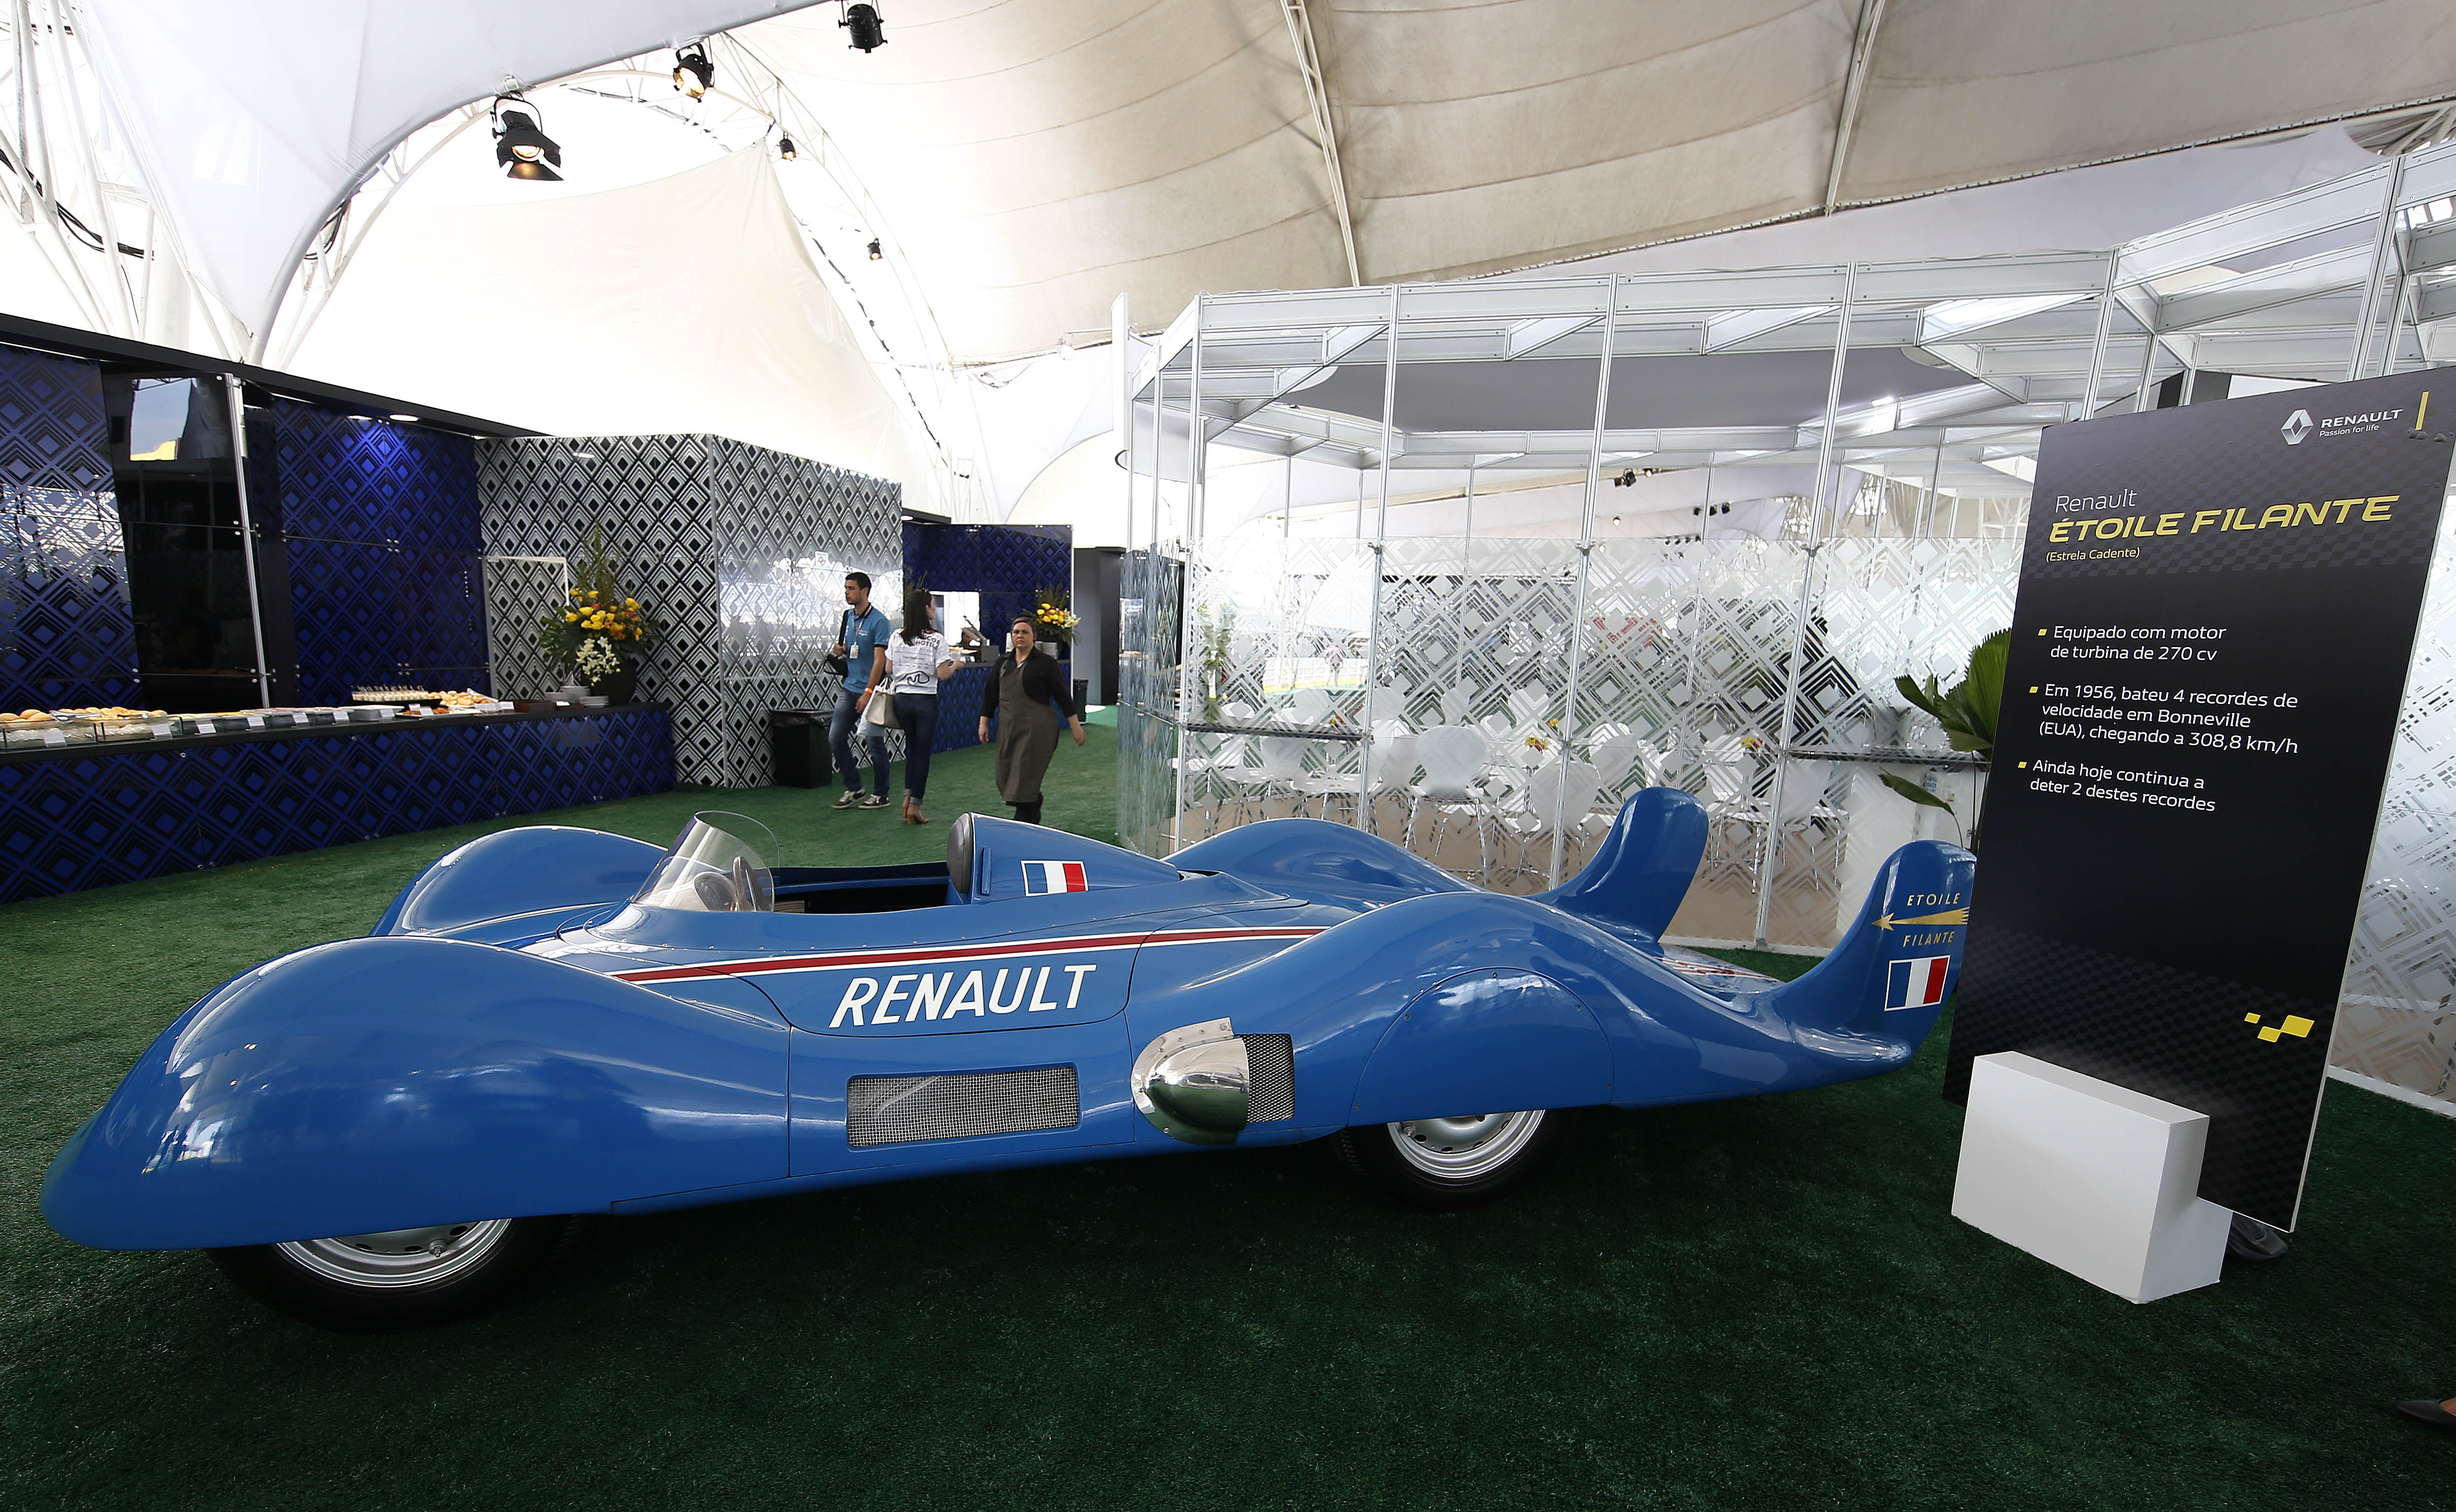 O Étoile Filante em exposição na área da Renault 